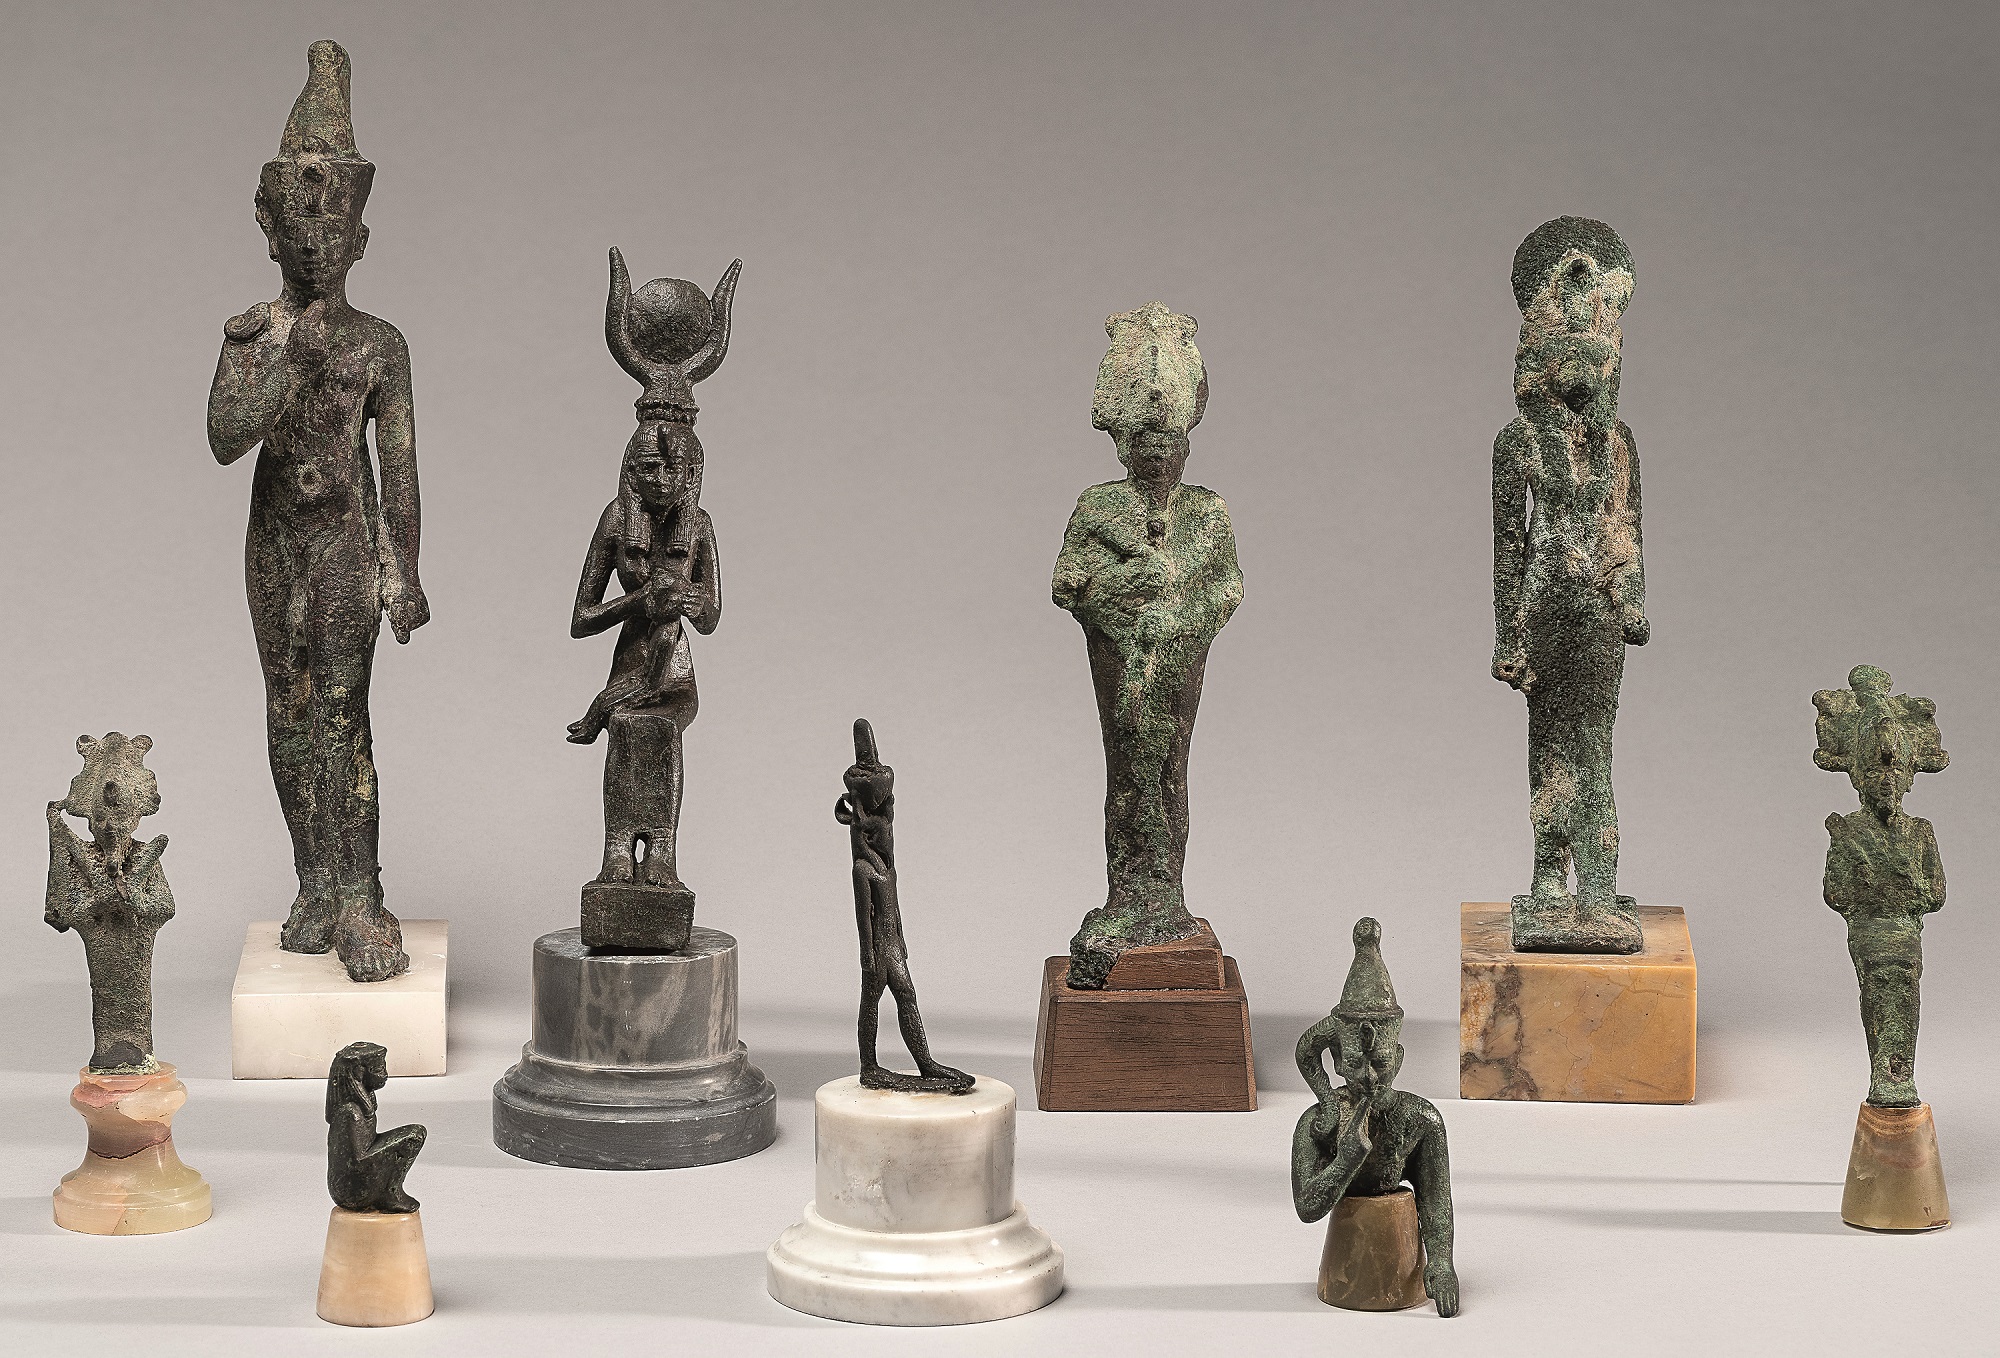 Statuettes de divinités égyptiennes en bronze, troisième période intermédiaire - ptolémaïque, 1069-30 av. J.-C. Photo service de presse. © Agence photographique du musée Rodin - Jérome Manoukian